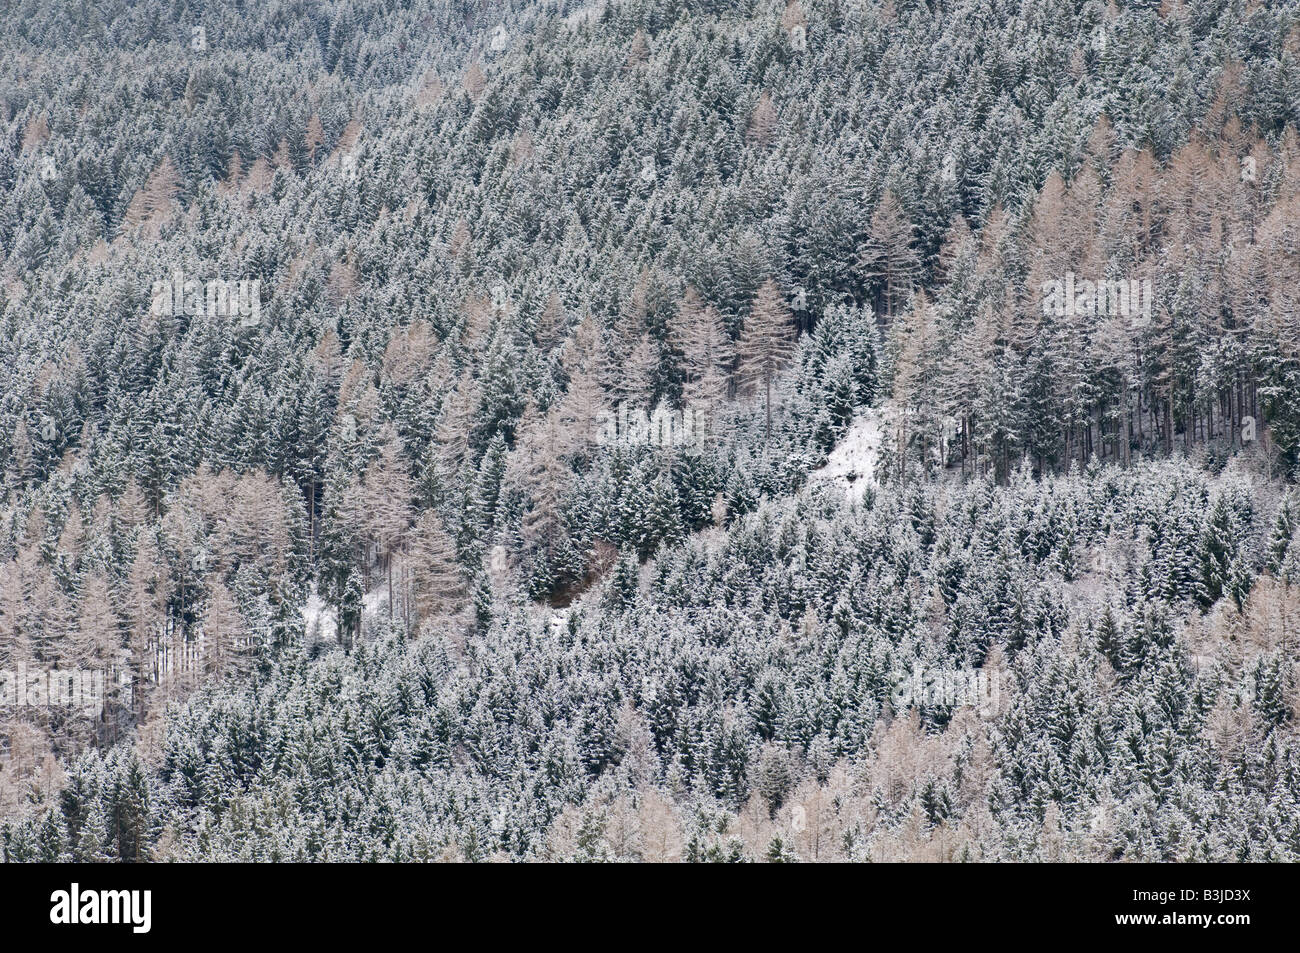 Mountain trees from Austria. Stock Photo